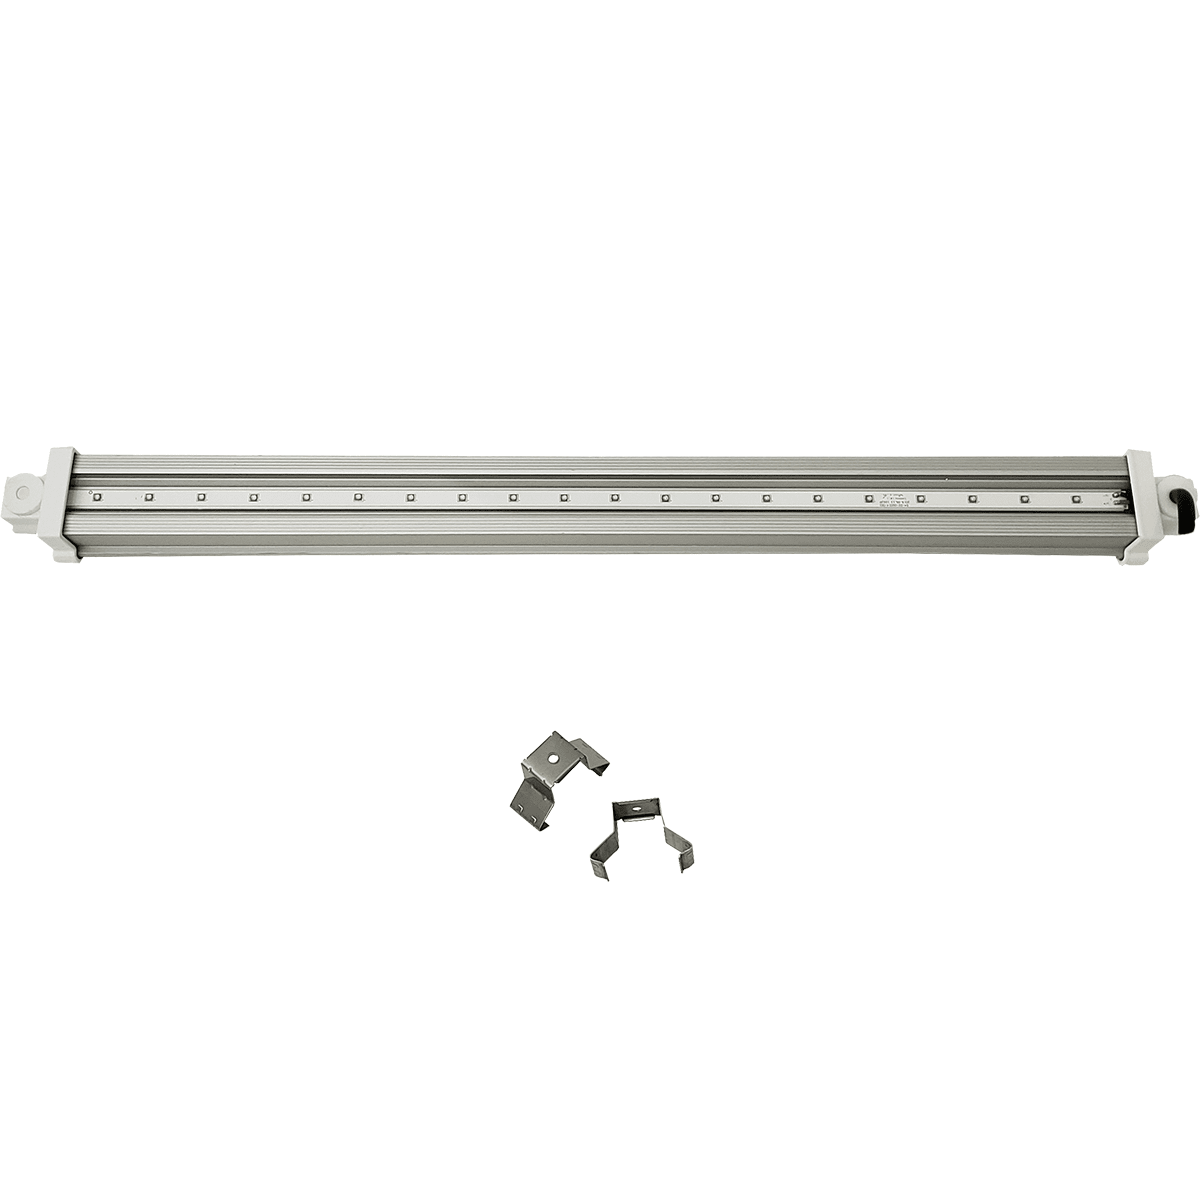 HLG 30 UVA Waterproof LED Supplement Bar (HLG-30-LAMP-UVA) - 240V